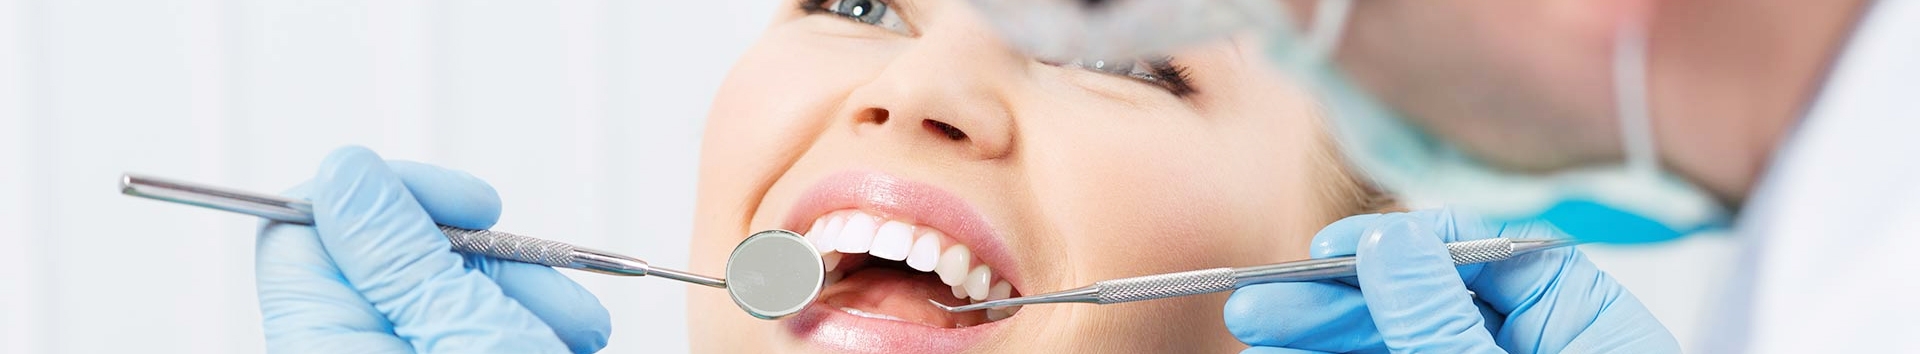 5 fatos perigosos que indicam que você deve ir ao dentista agora